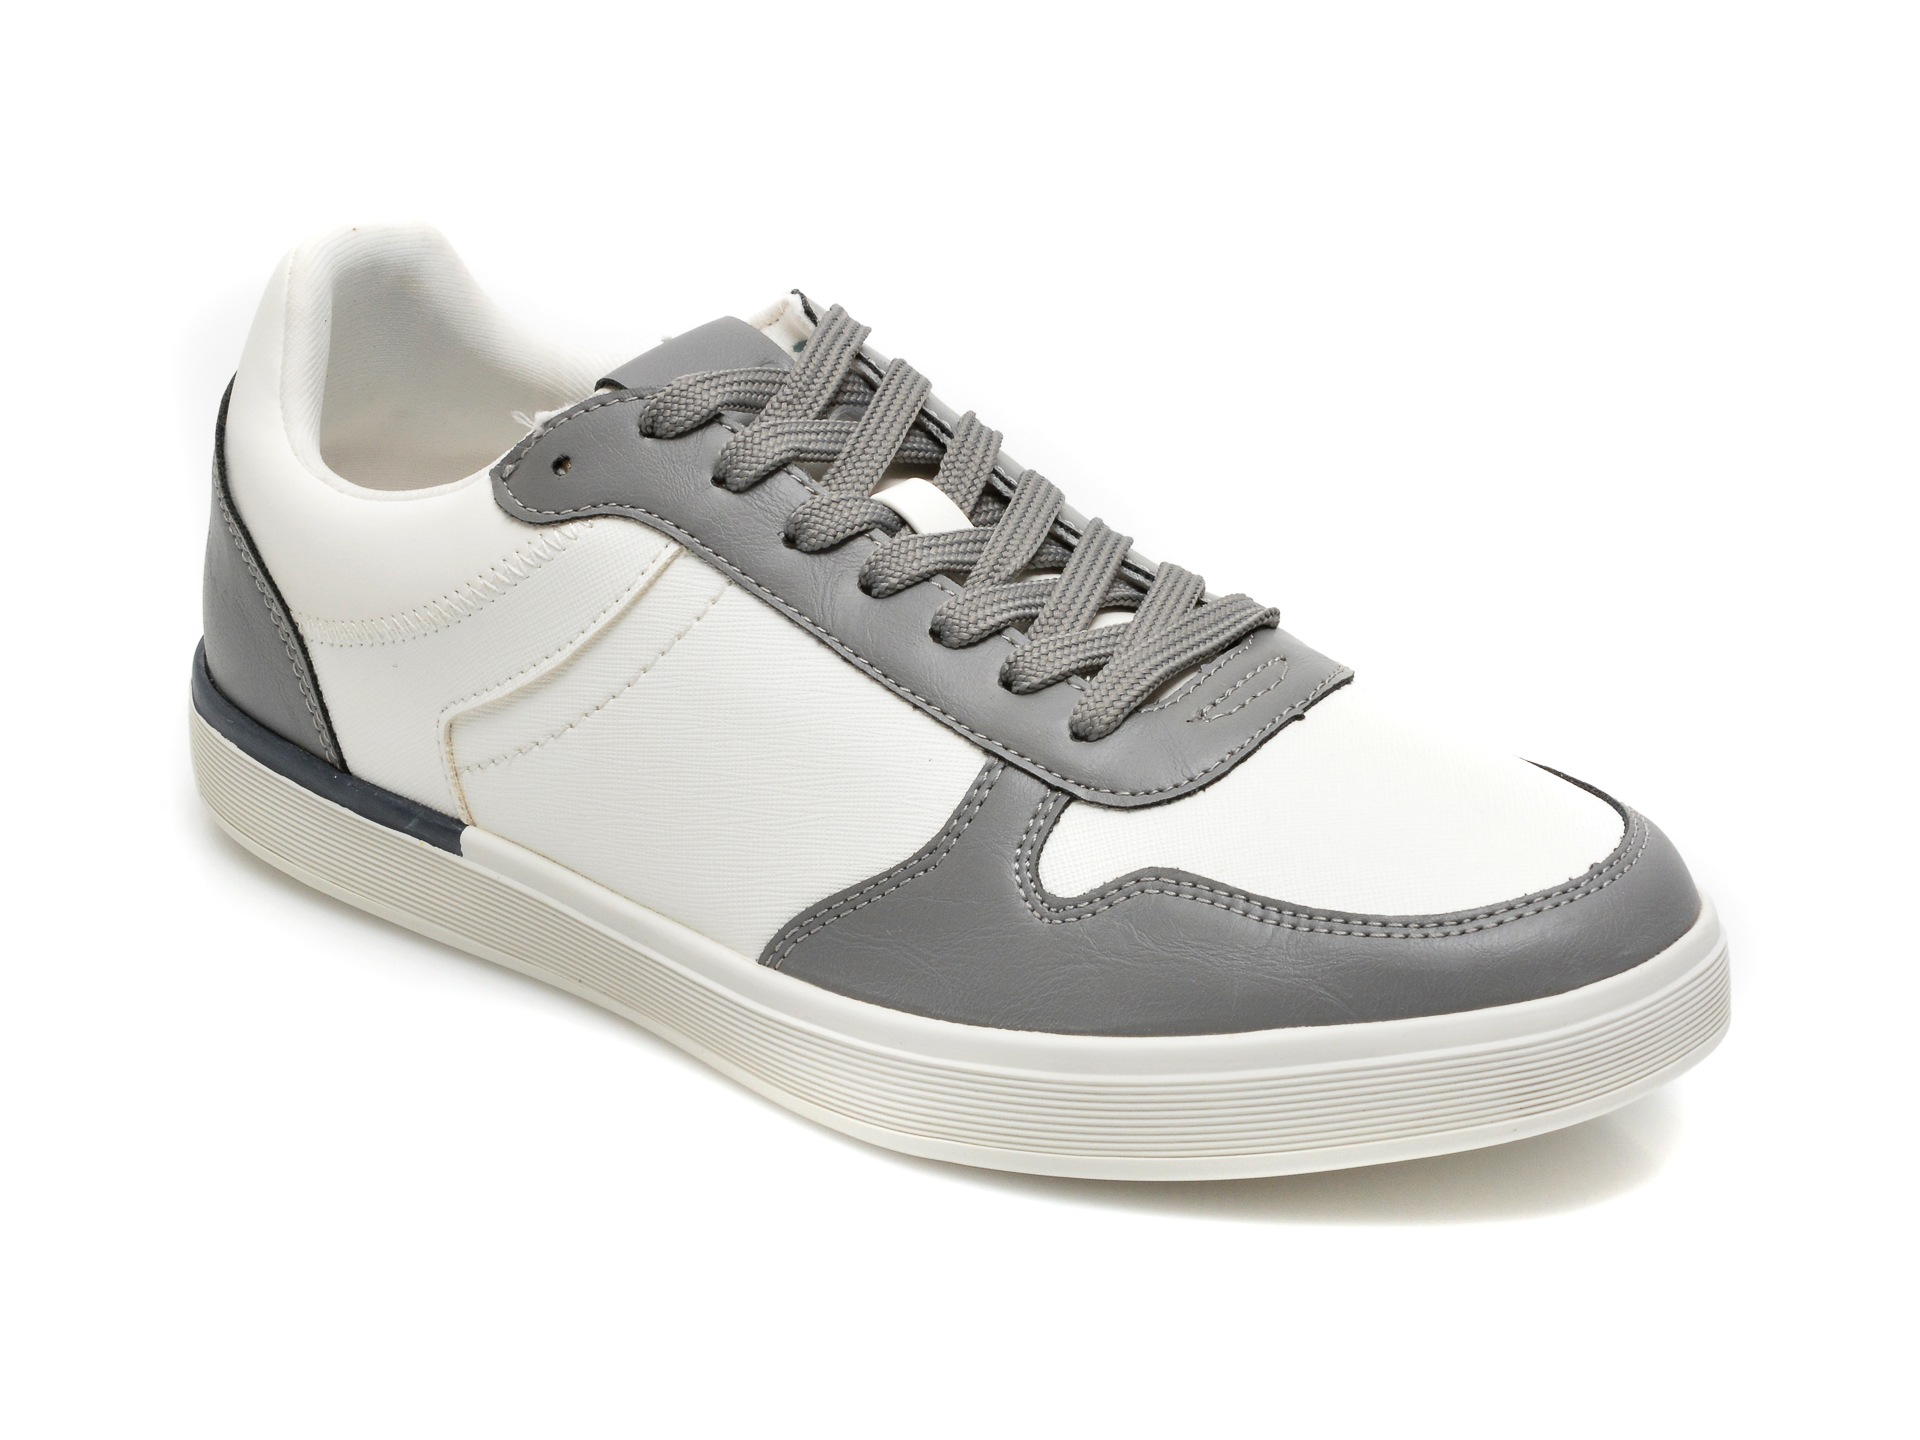 Pantofi sport ALDO gri, OLICKO020, din piele ecologica Aldo imagine reduceri